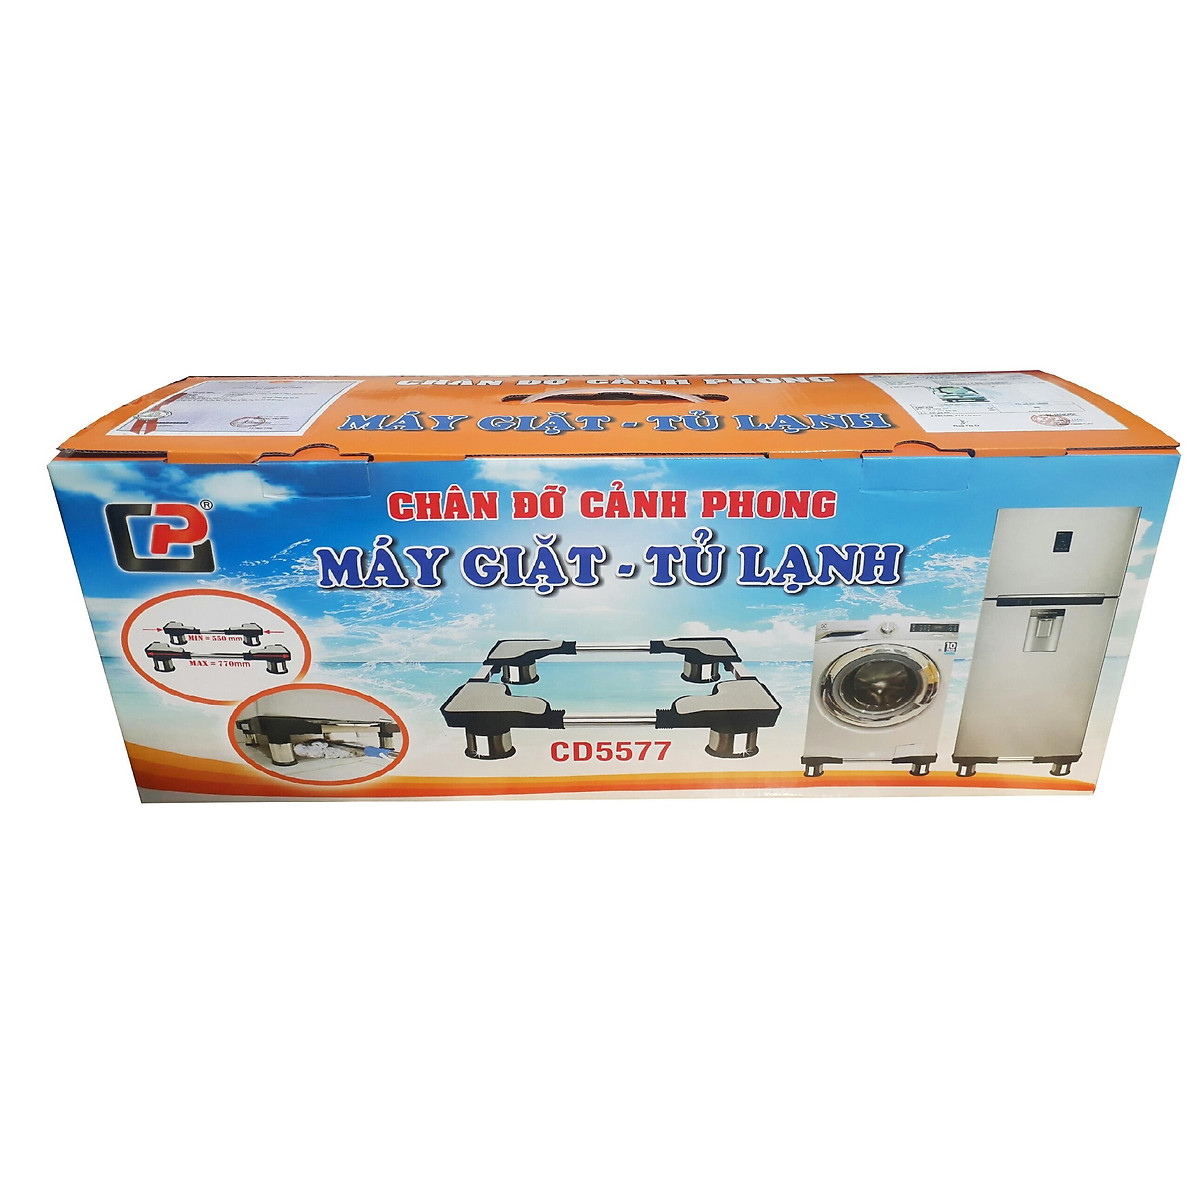 Mua Chân Đỡ Máy Giặt Tủ Lạnh Cảnh Phong CD5577 ( Chân Inox 55-77cm) tại Cty  Cảnh Phong